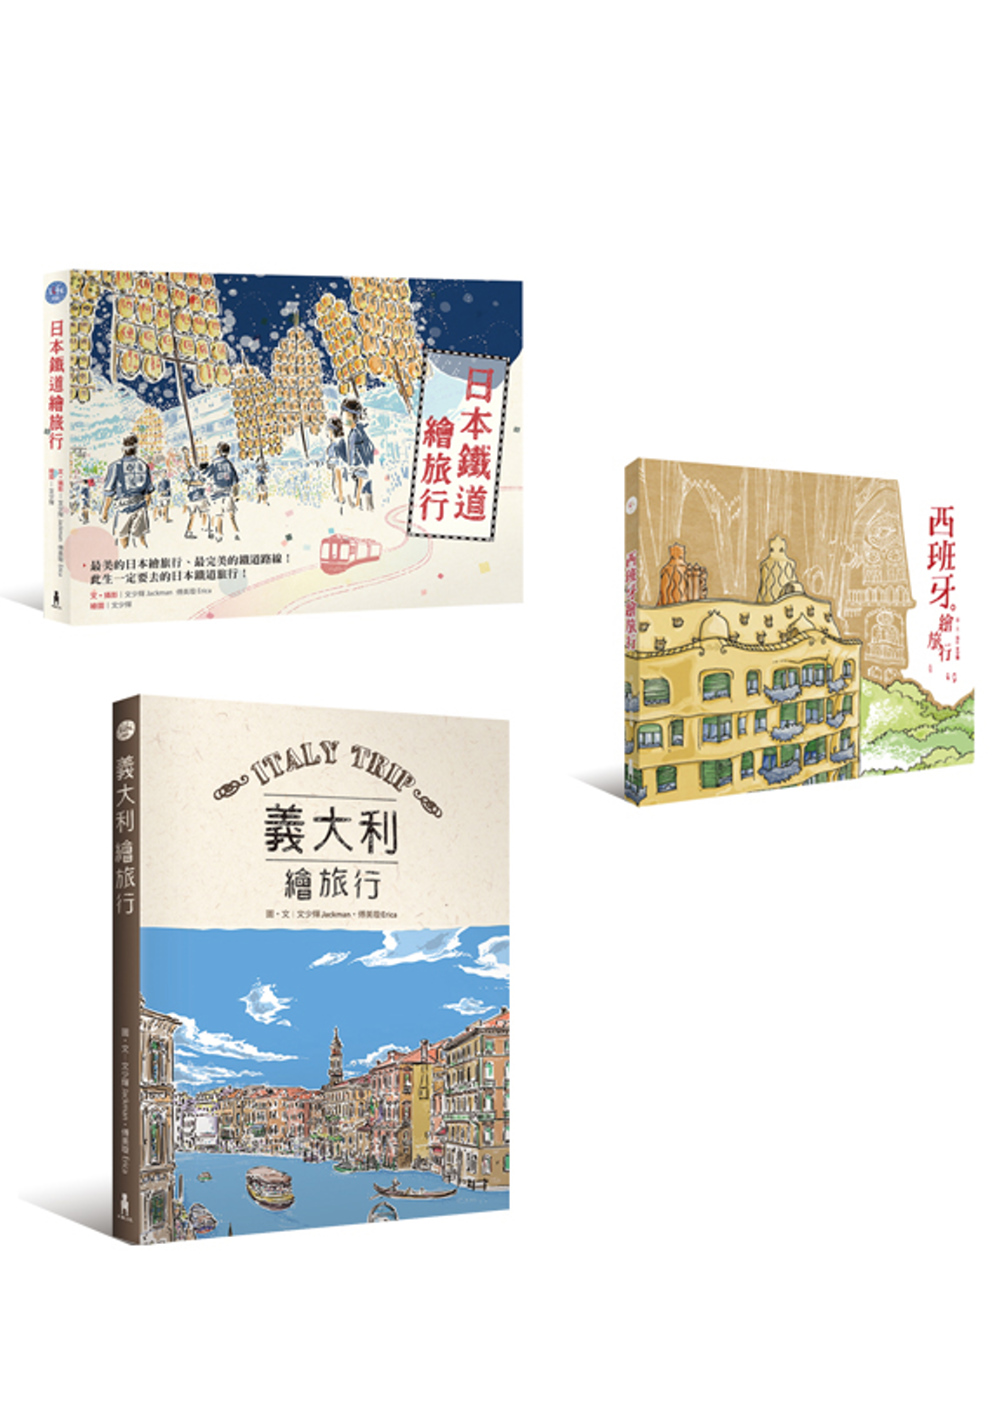 好好玩繪旅行(3冊套書) (日本鐵道繪旅行+西班牙繪旅行+義大利繪旅行)